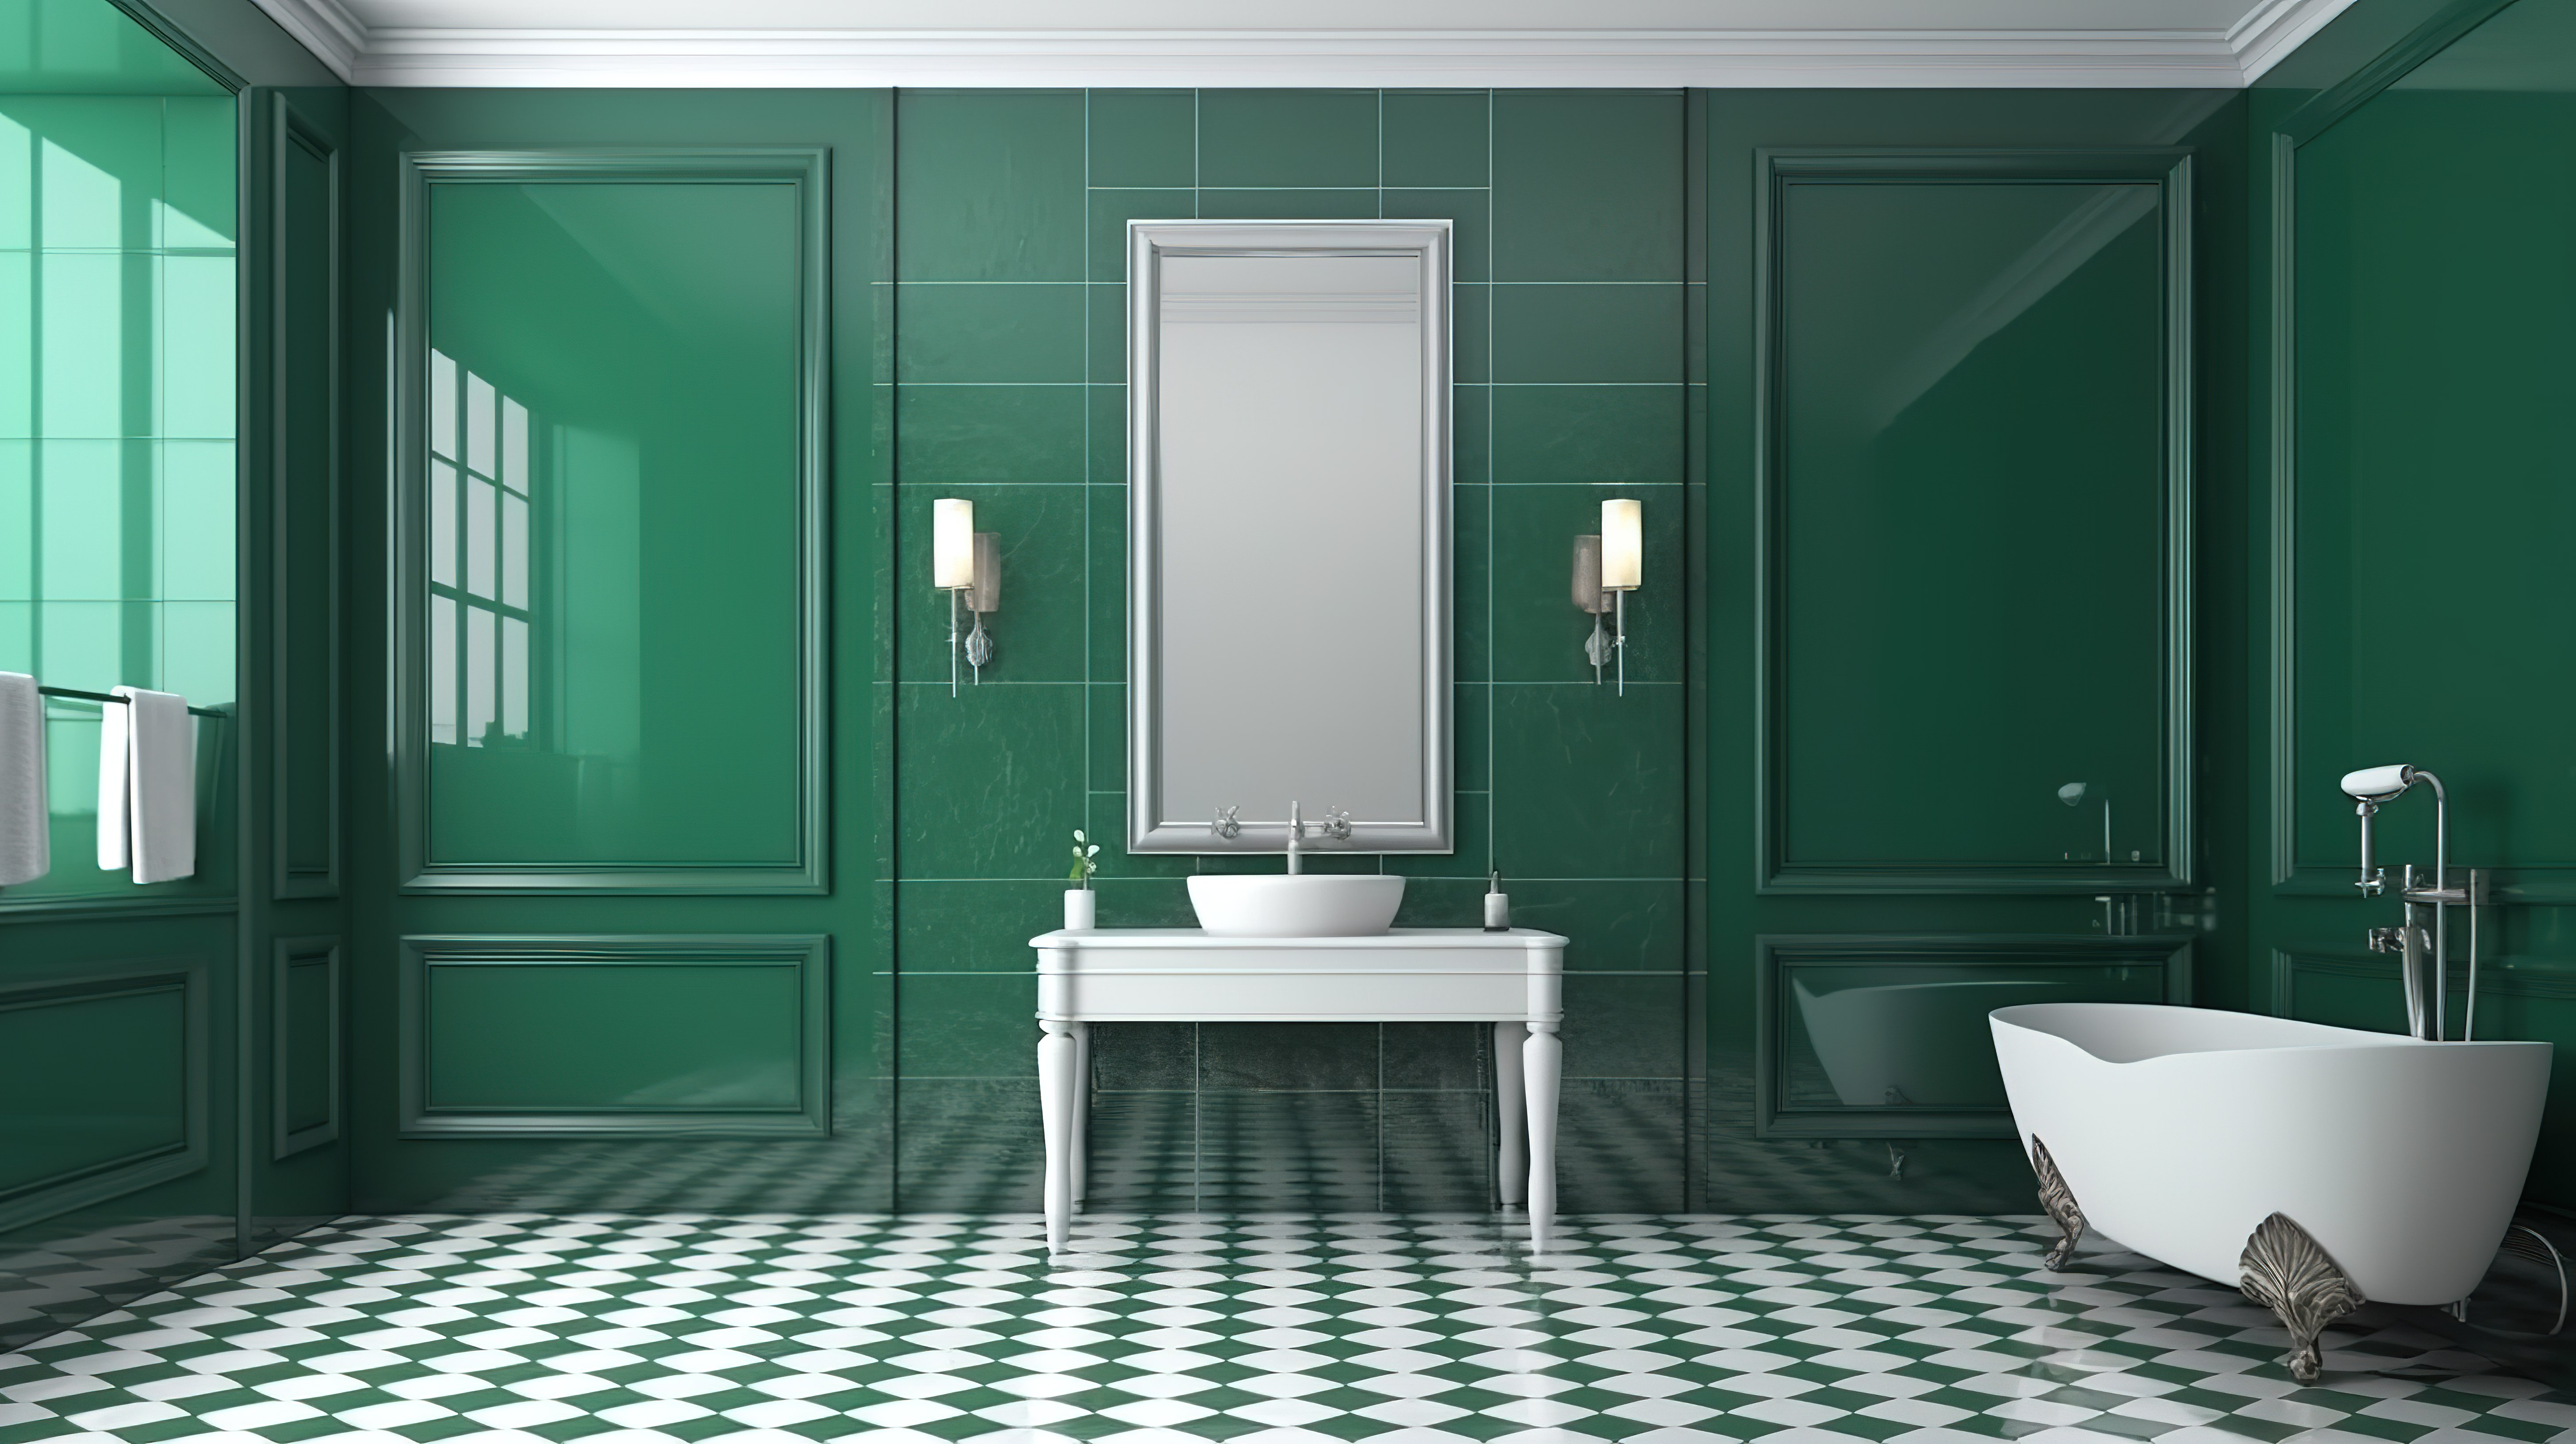 经典风格的酒店浴室 3d 渲染绿色瓷砖墙大镜子和角落的白色洗脸盆图片